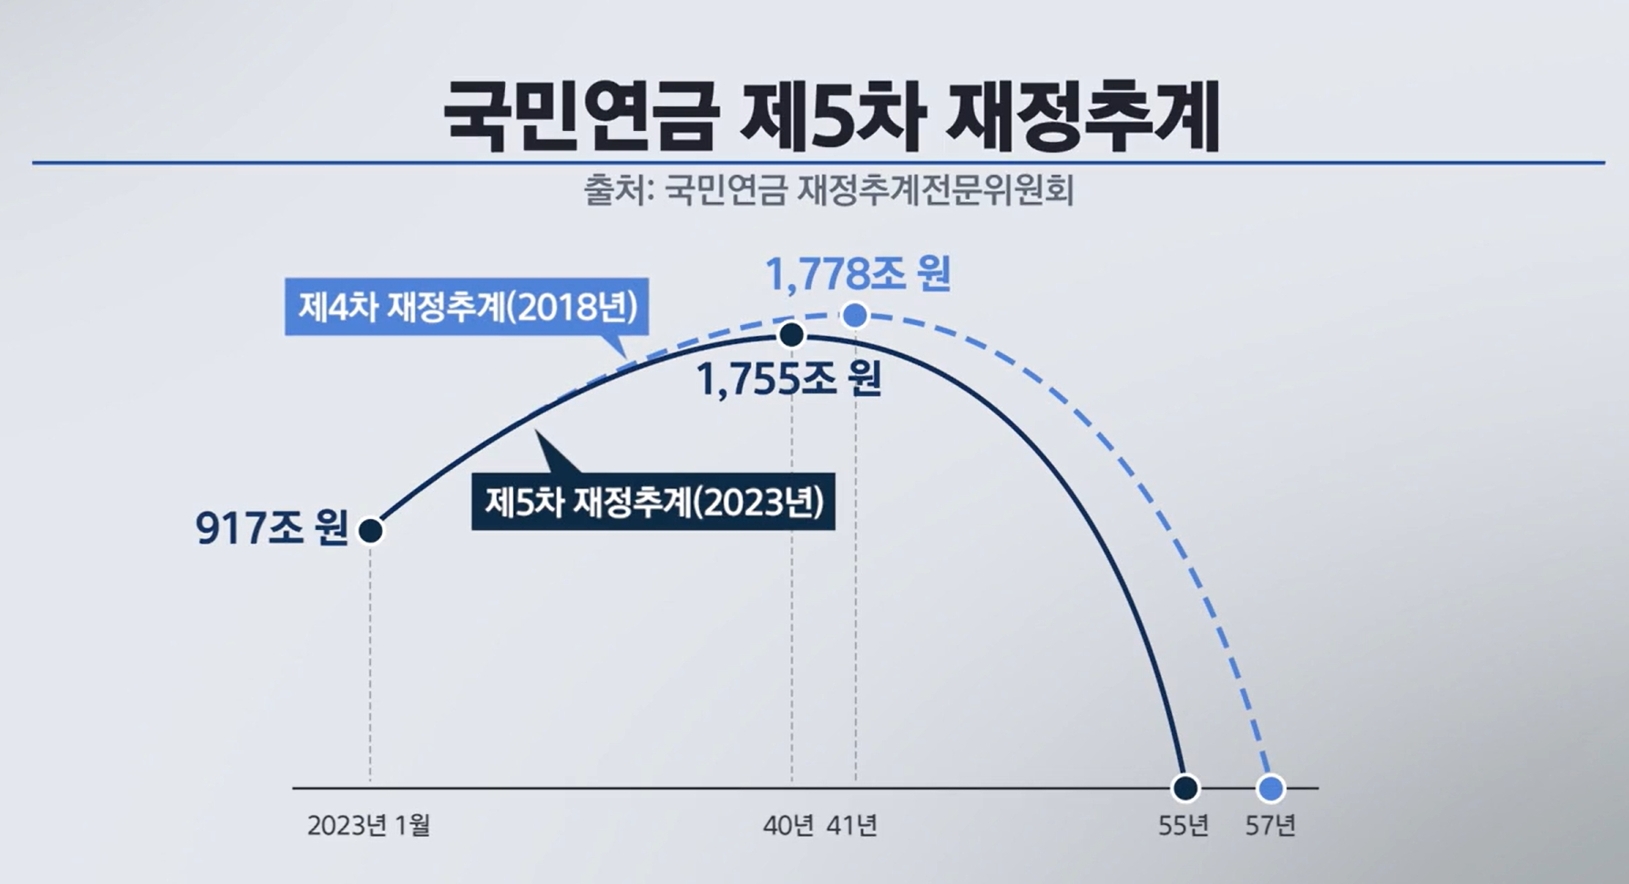 국민연금 기금 적립 규모/국민연금 5차 재정추계 결과(23.3.31)